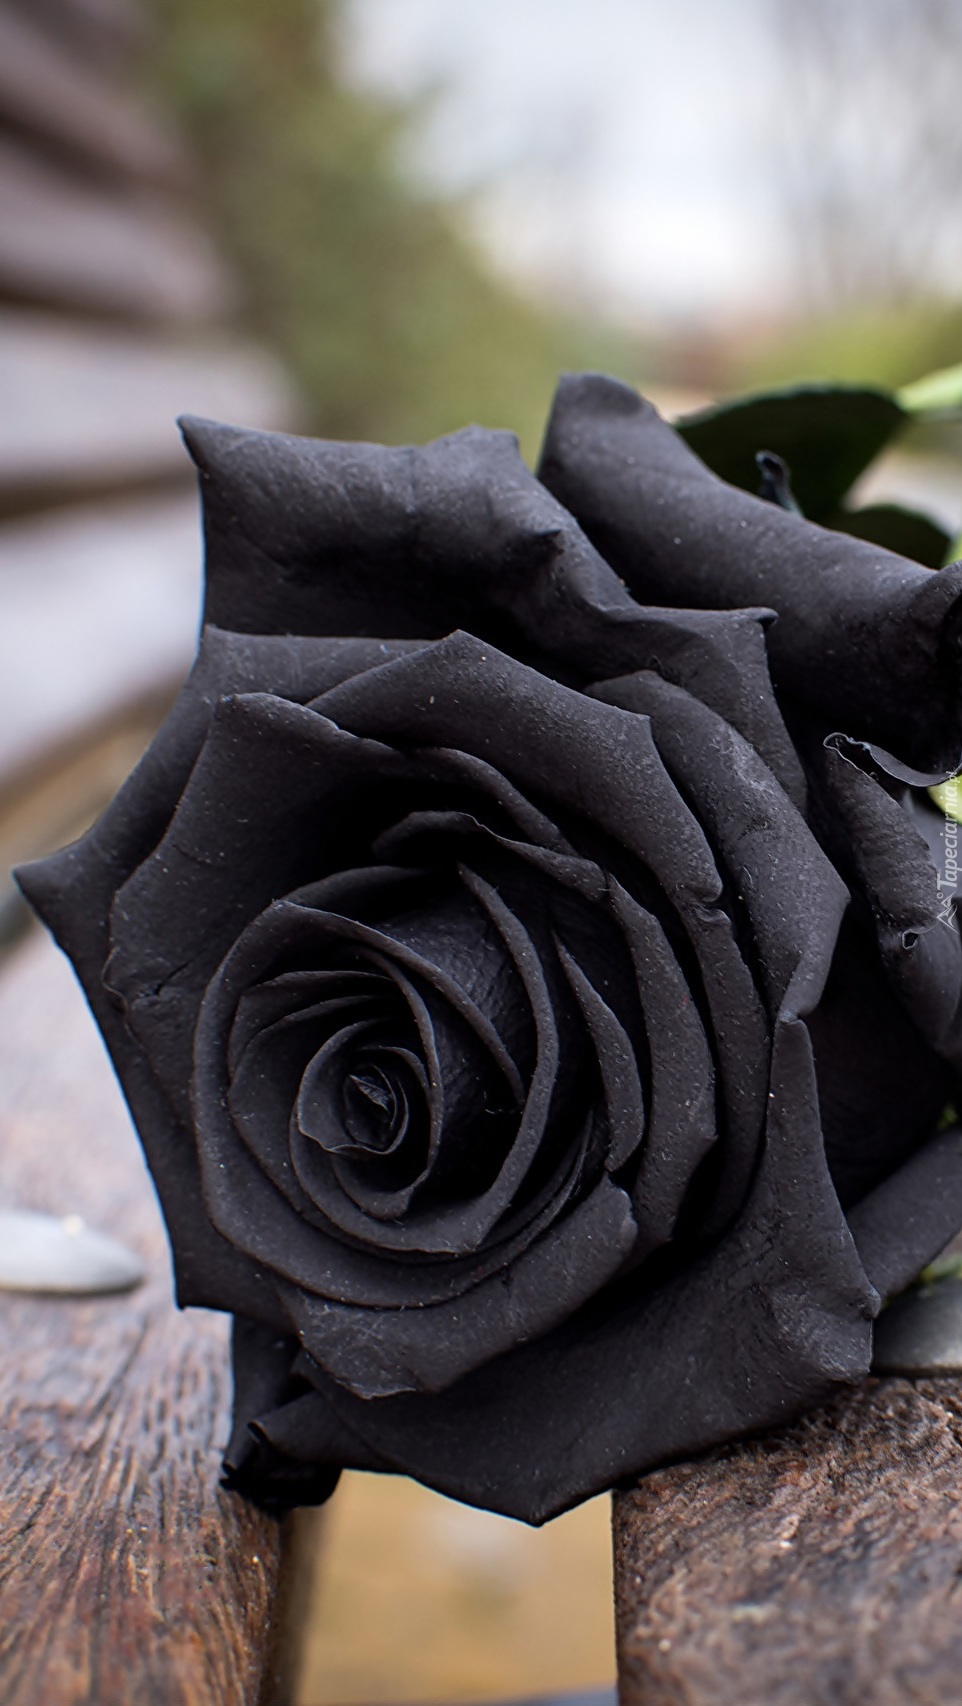 Czarna róża na ławce